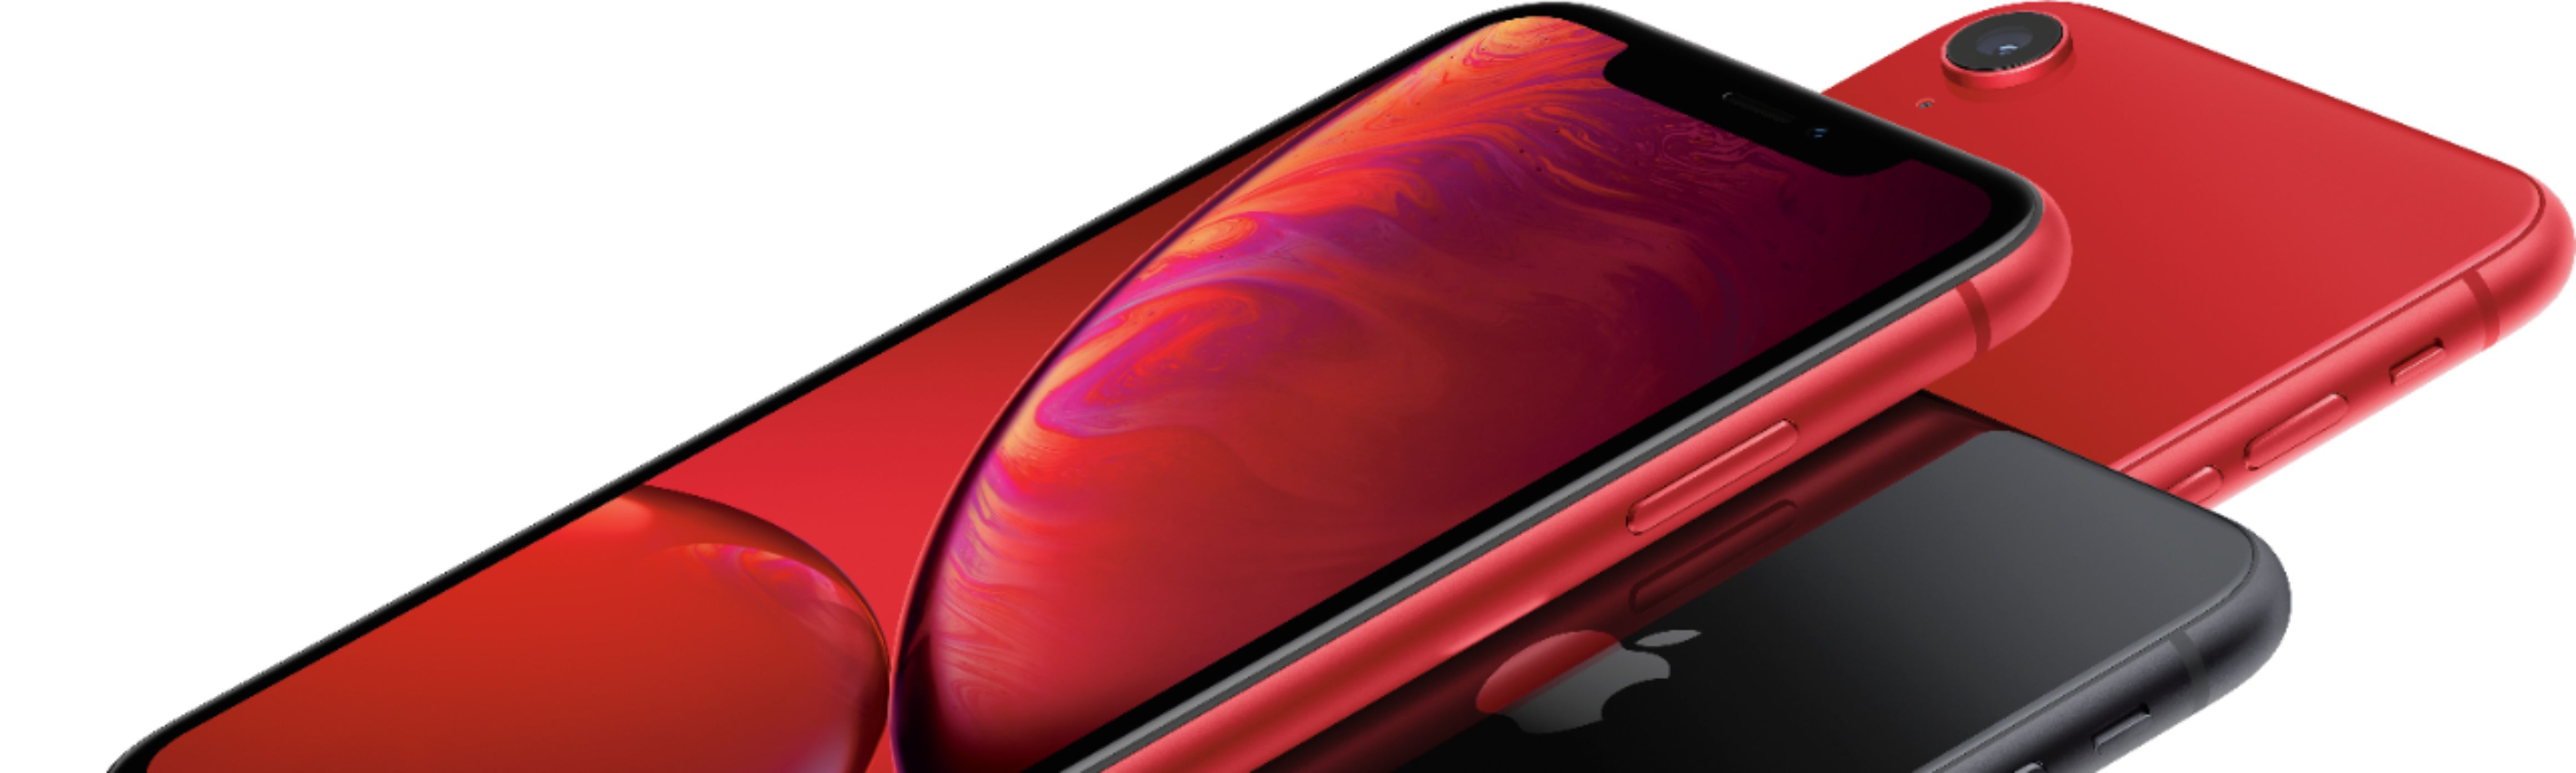 スマートフォン/携帯電話 スマートフォン本体 Best Buy: Apple iPhone XR 128GB (PRODUCT)RED™ (Verizon) MT022LL/A